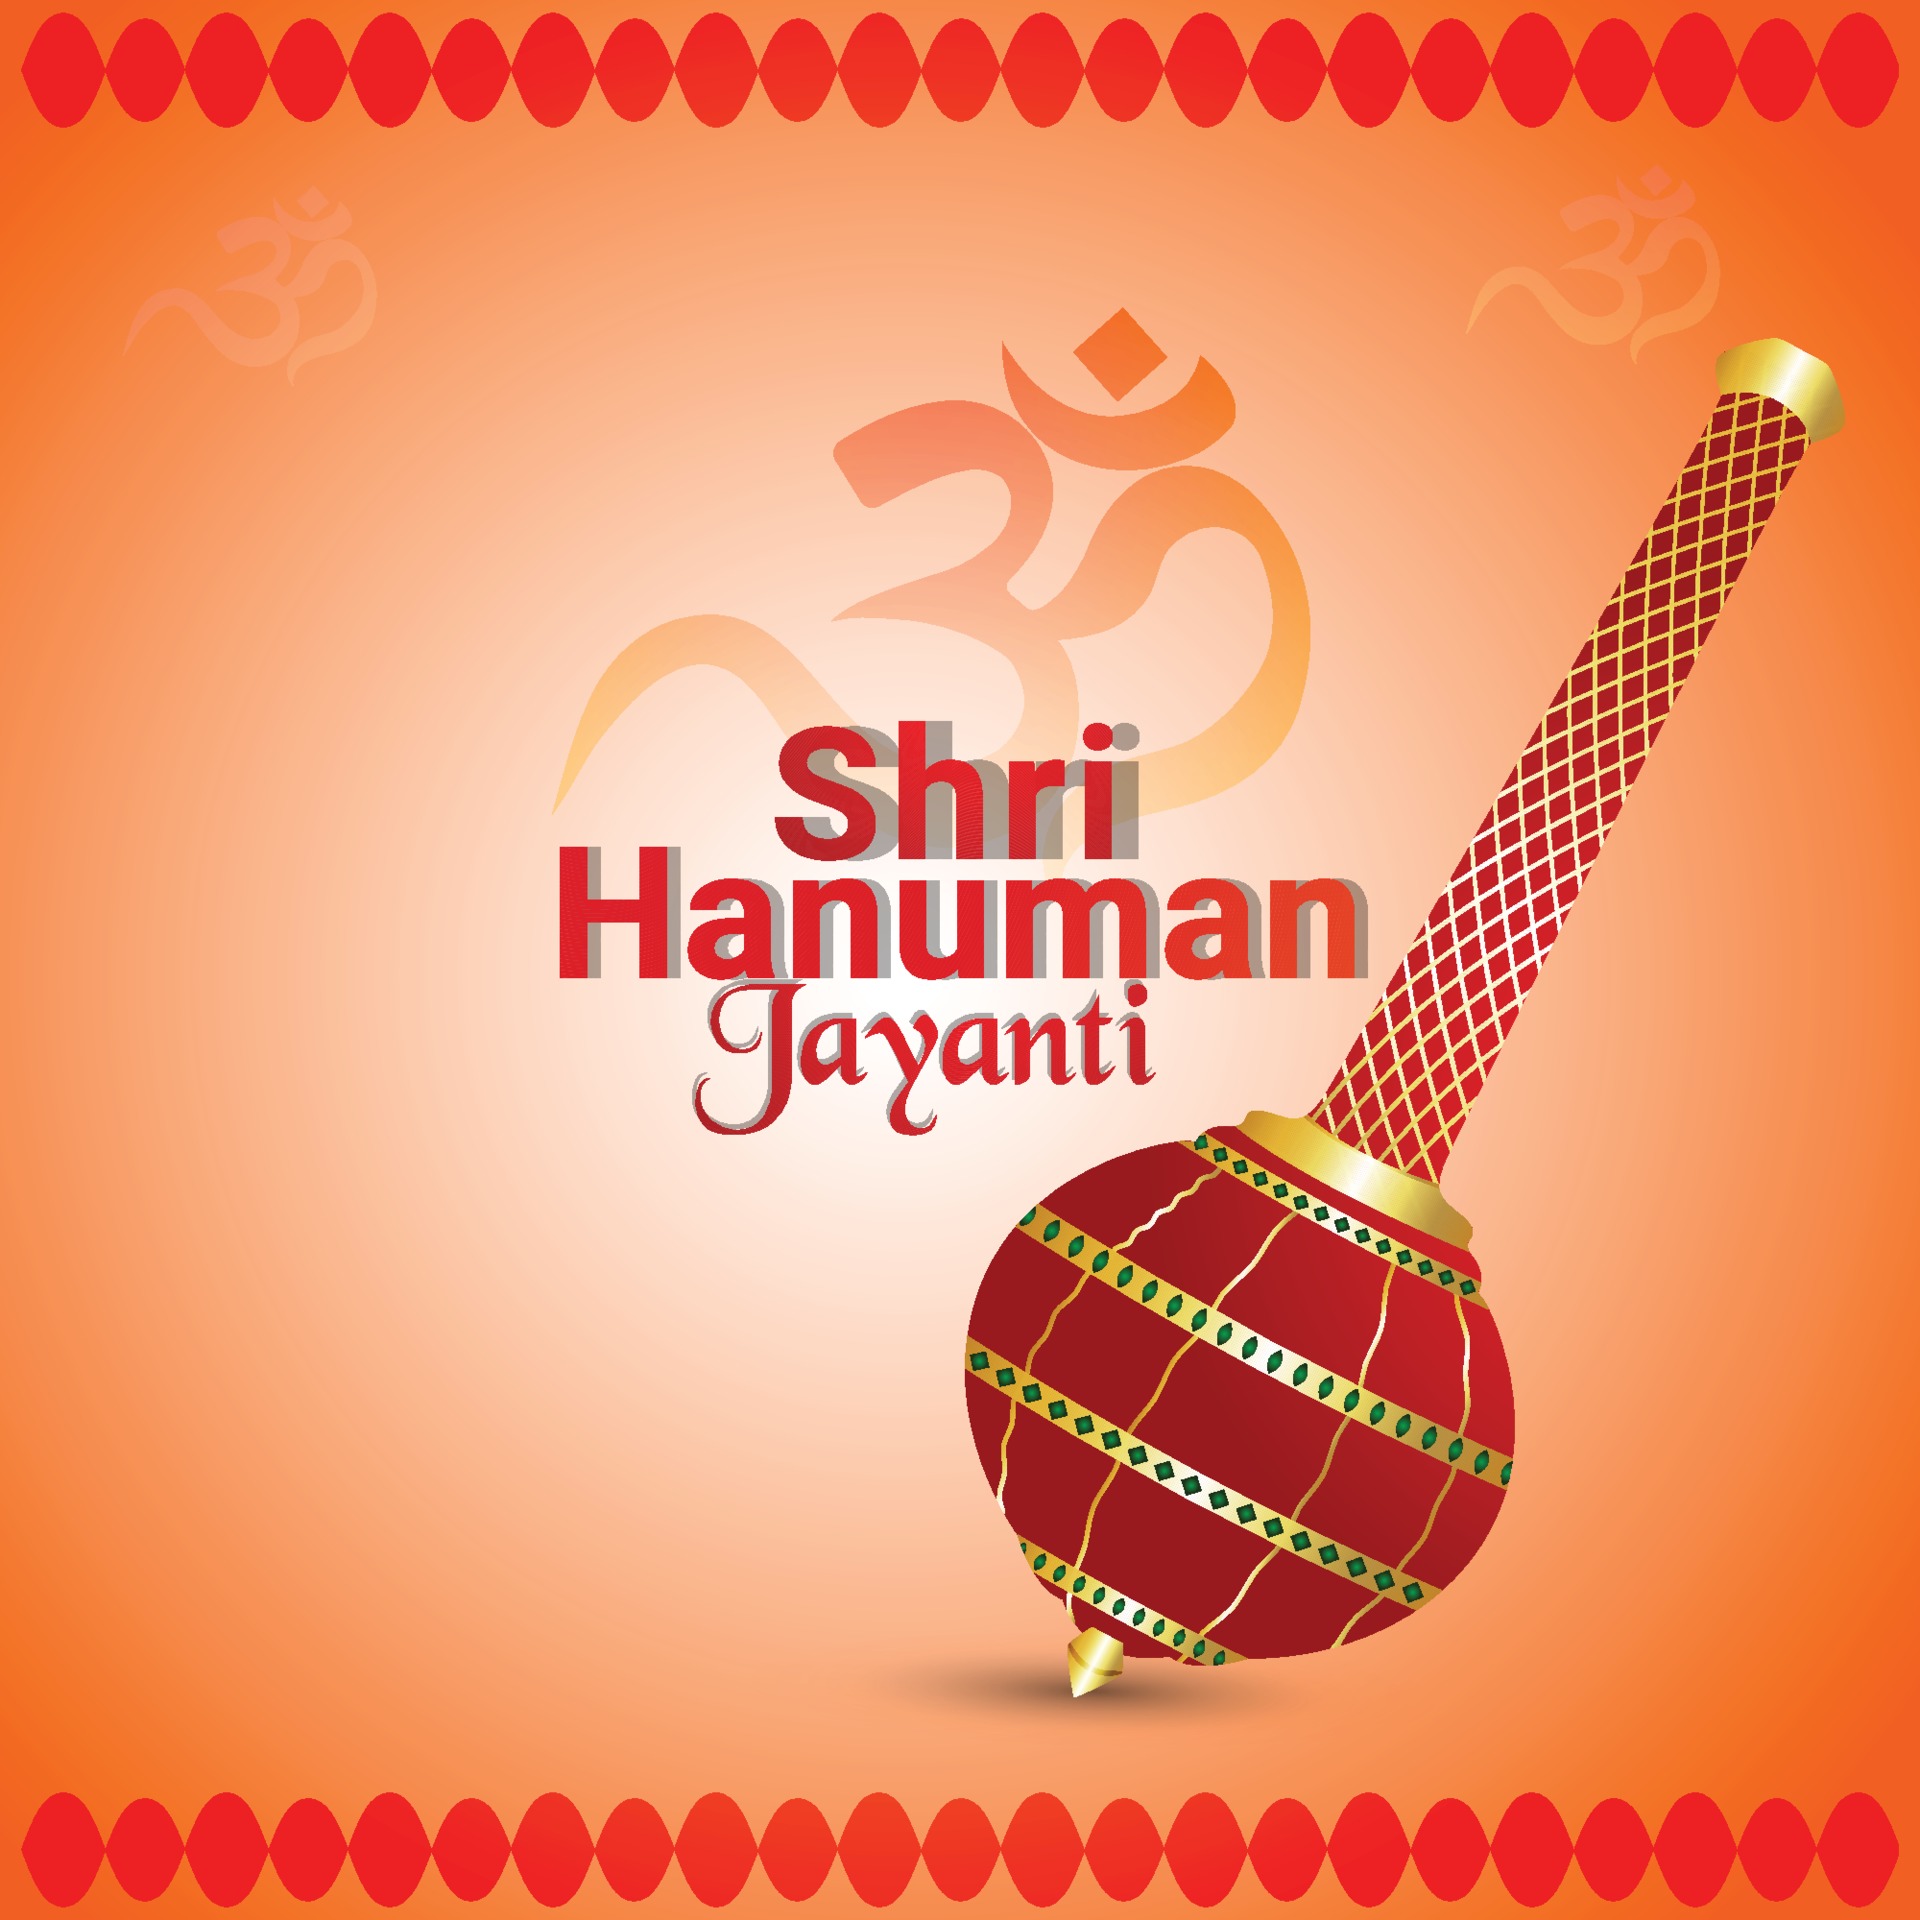 Hanuman jayanti celebration background 2051033 Vector Art at Vecteezy